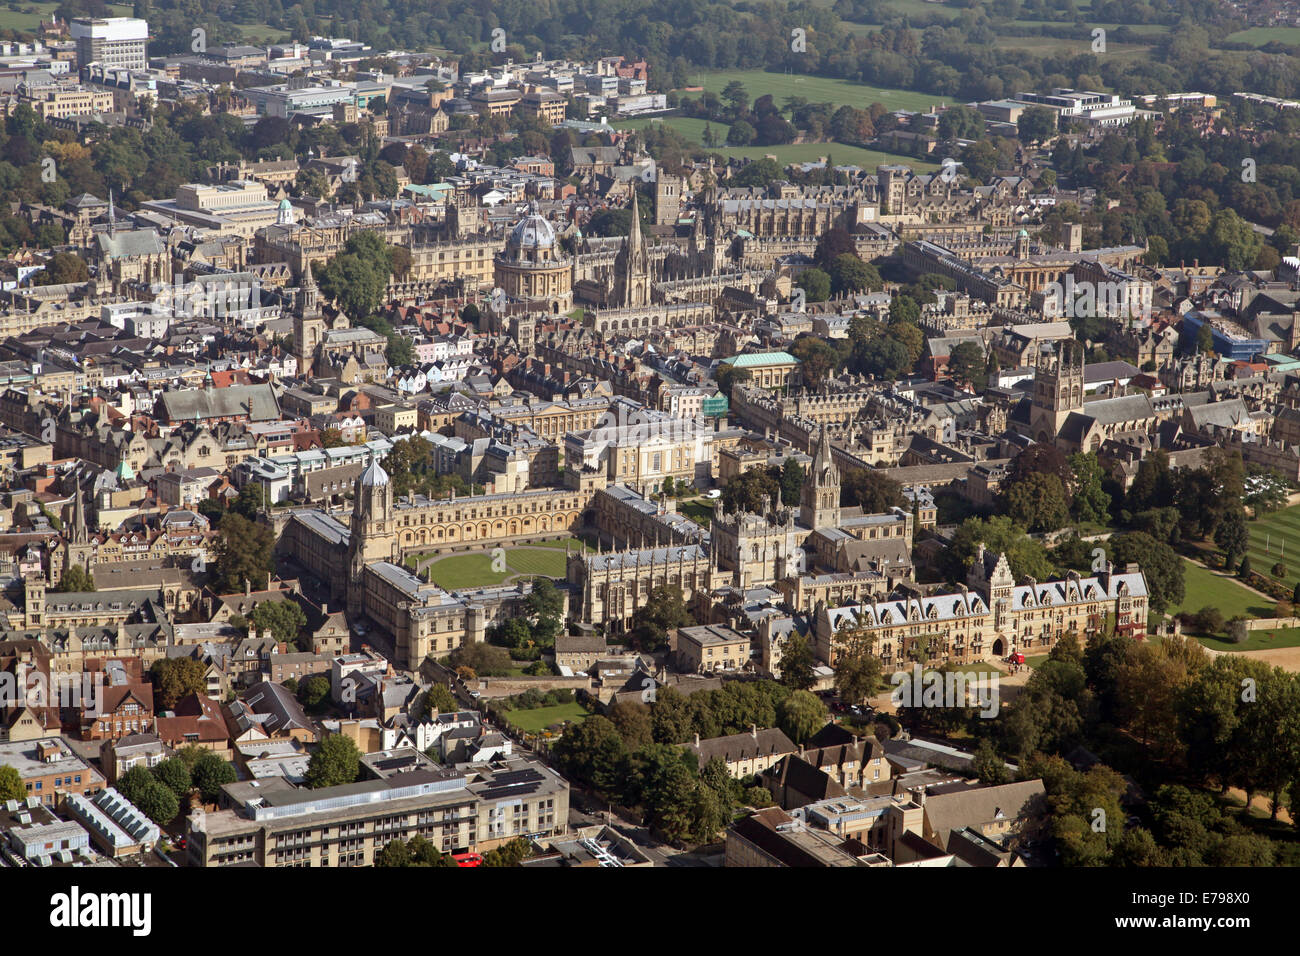 Luftaufnahme des Stadtzentrum von Oxford University Colleges und der Bodleian Library prominente Stockfoto